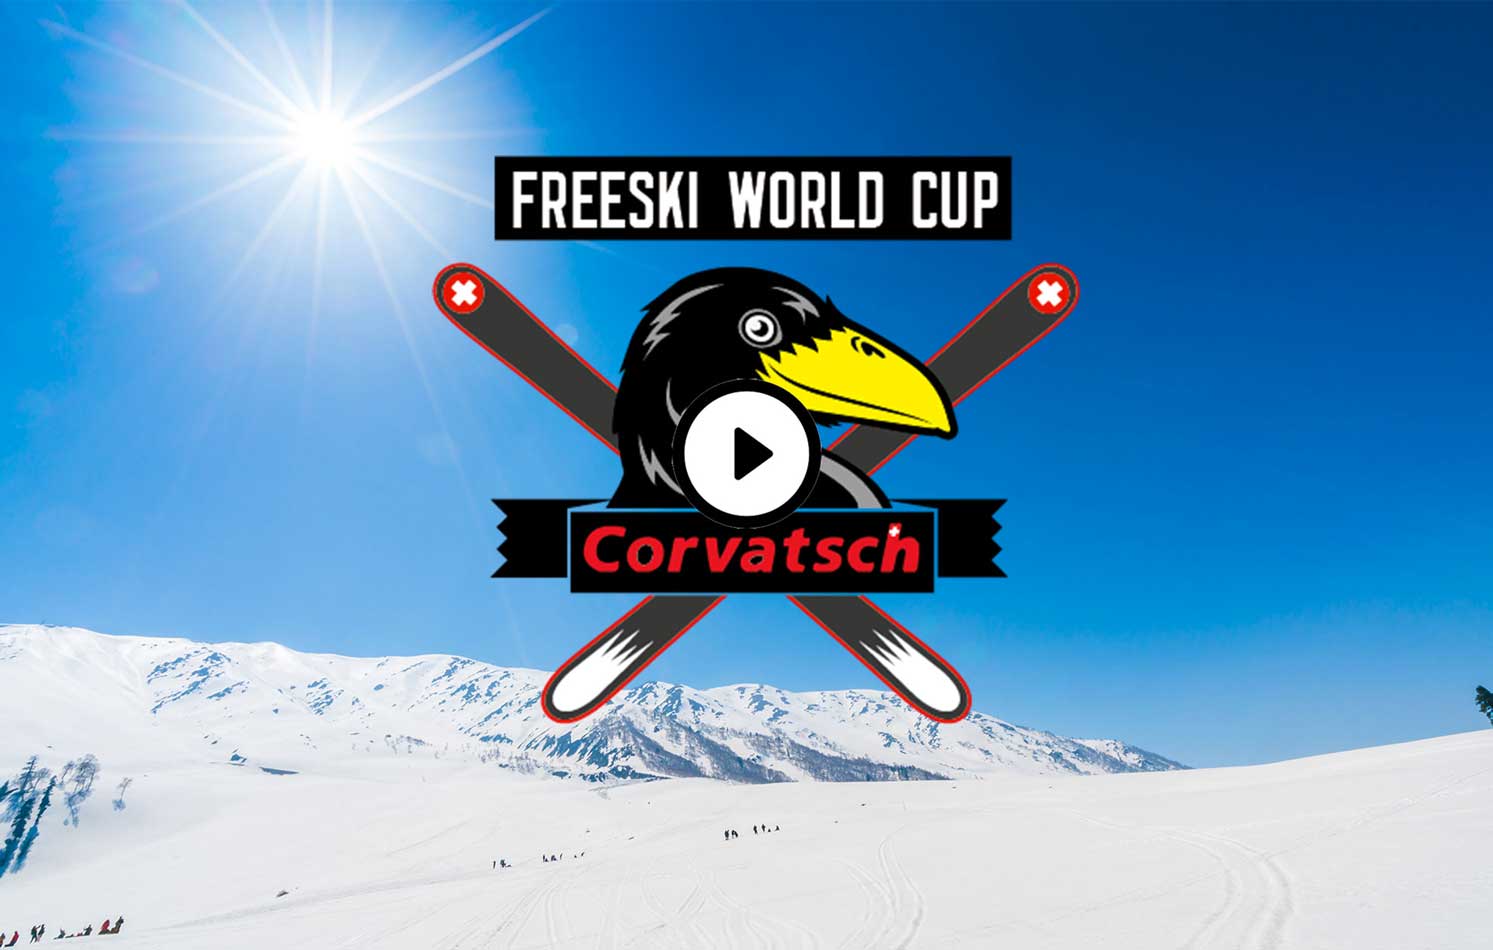 Anova-Project-video-animazioni3d-snowboard-coppa-mondo-cortatsch